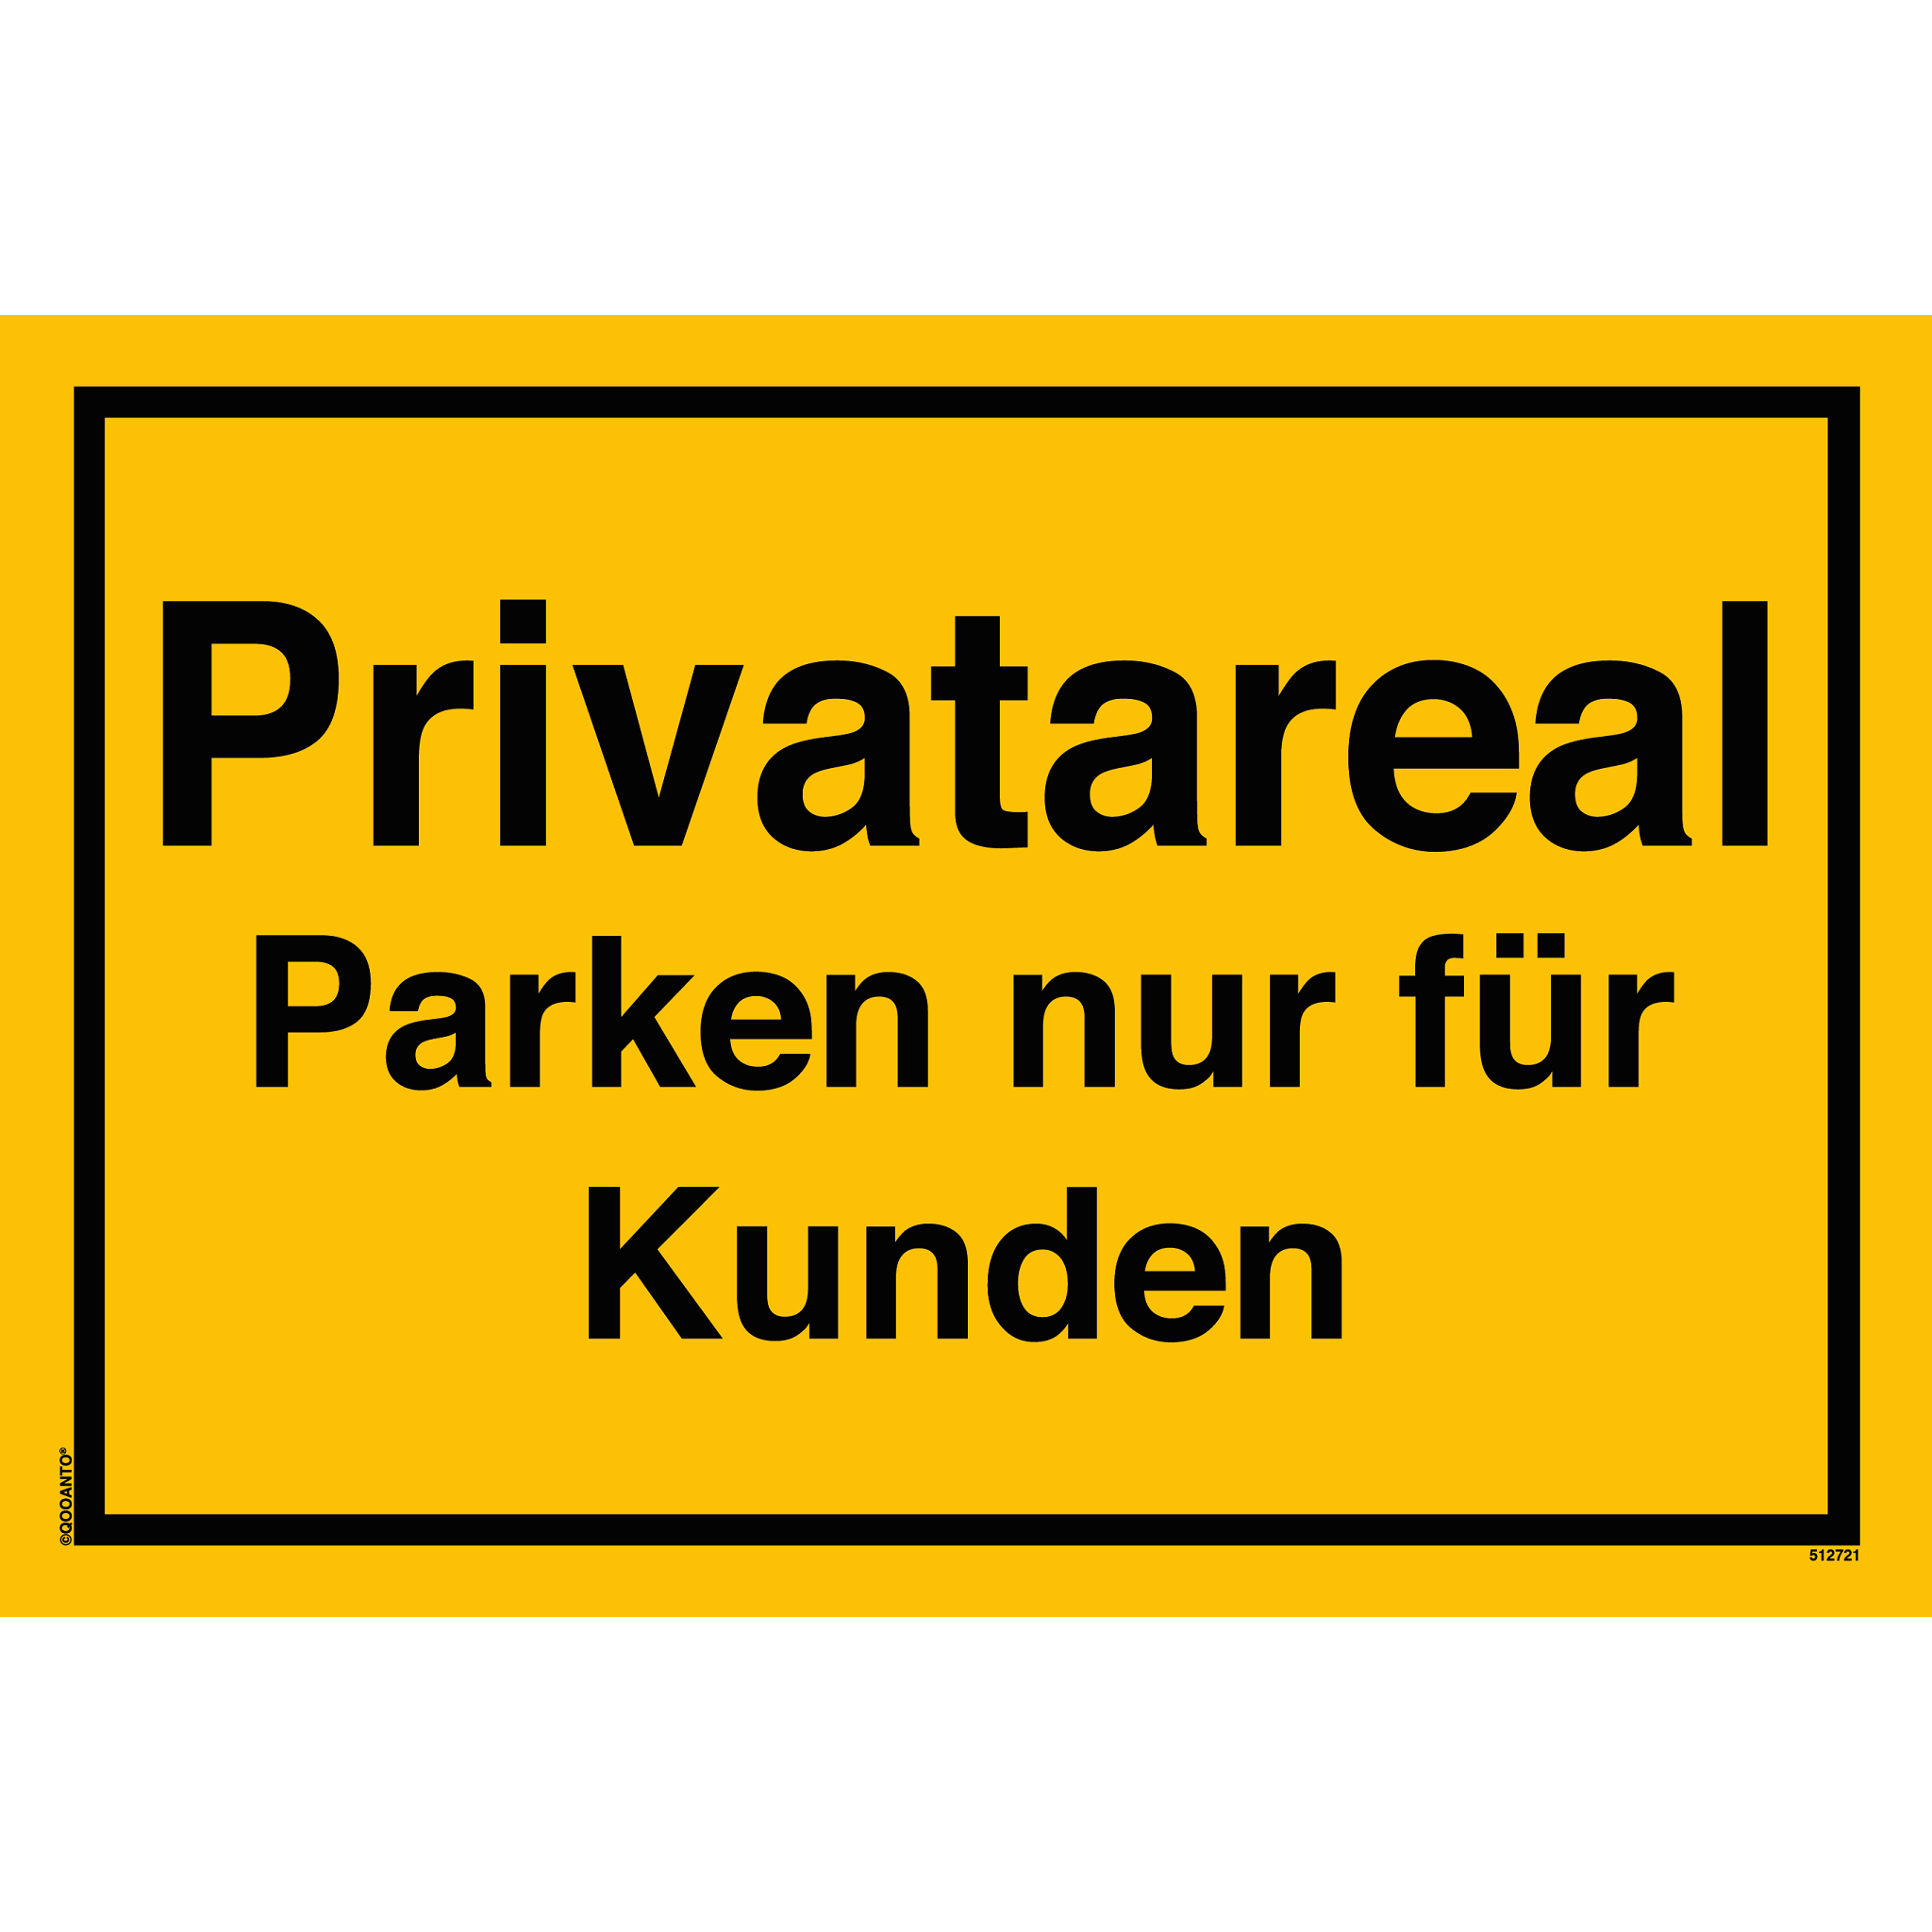 Privatareal Parken nur für Kunden, gelb, Schild